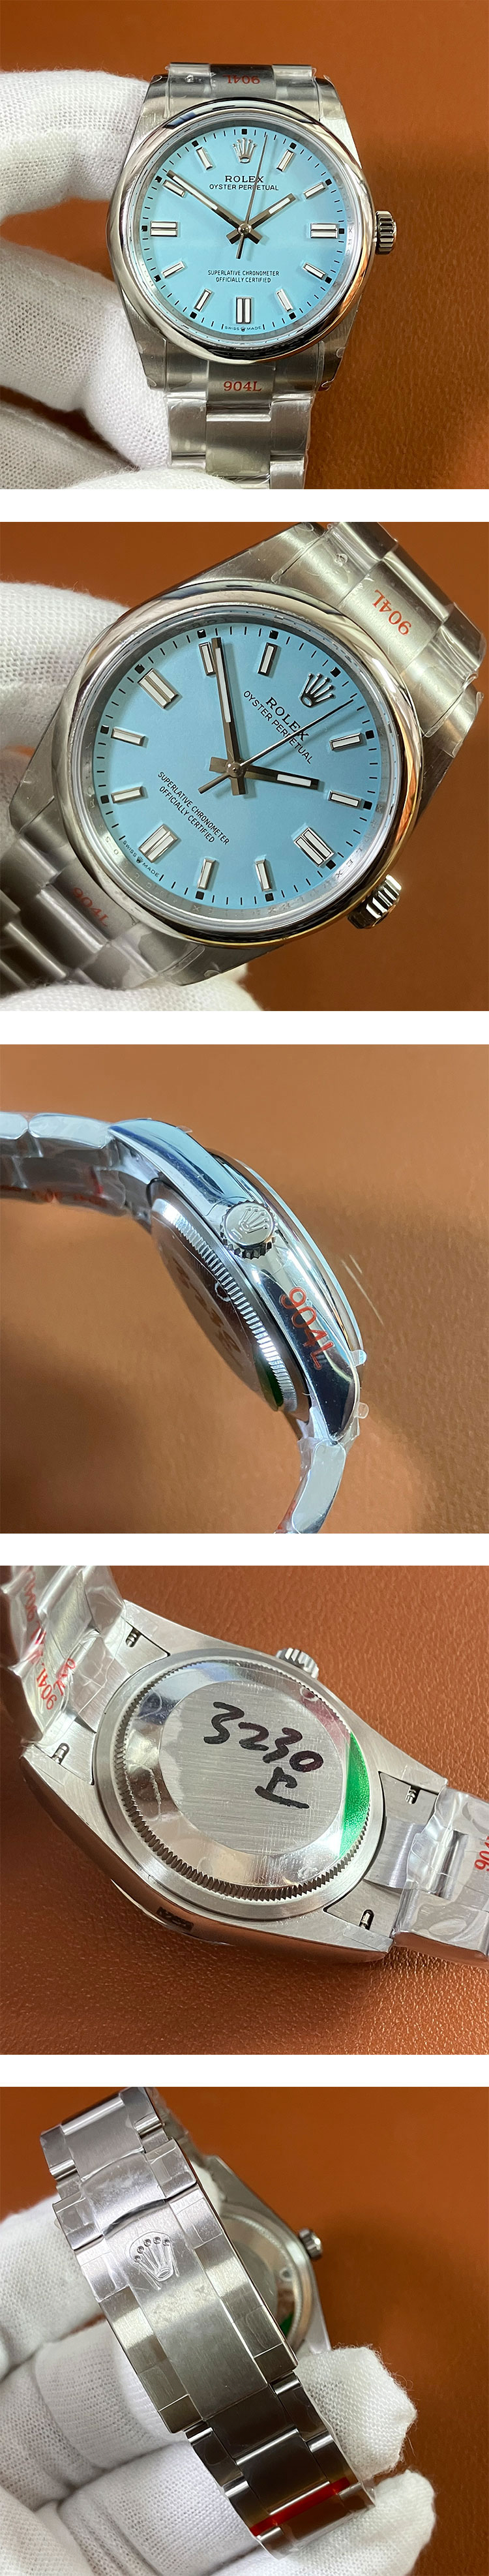 最高級ロレックスコピー時計 オイスターパーペチュアル m126000-0006 ターコイズブルー 3230ムーブメント 904L